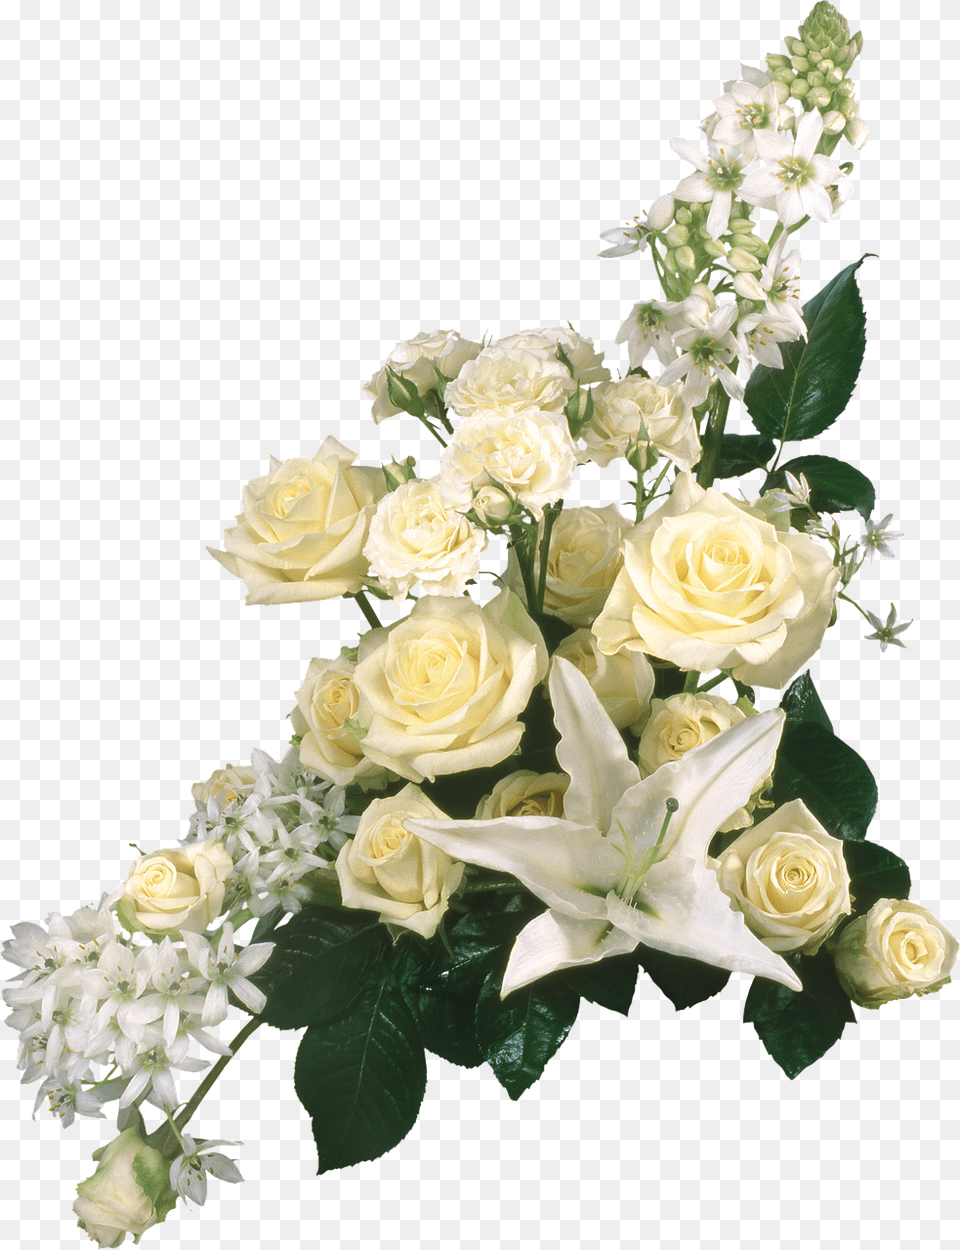 Grave Piece Flowers Picture Imagenes De Rosas Blancas En, Rose, Plant, Flower, Flower Arrangement Free Png Download